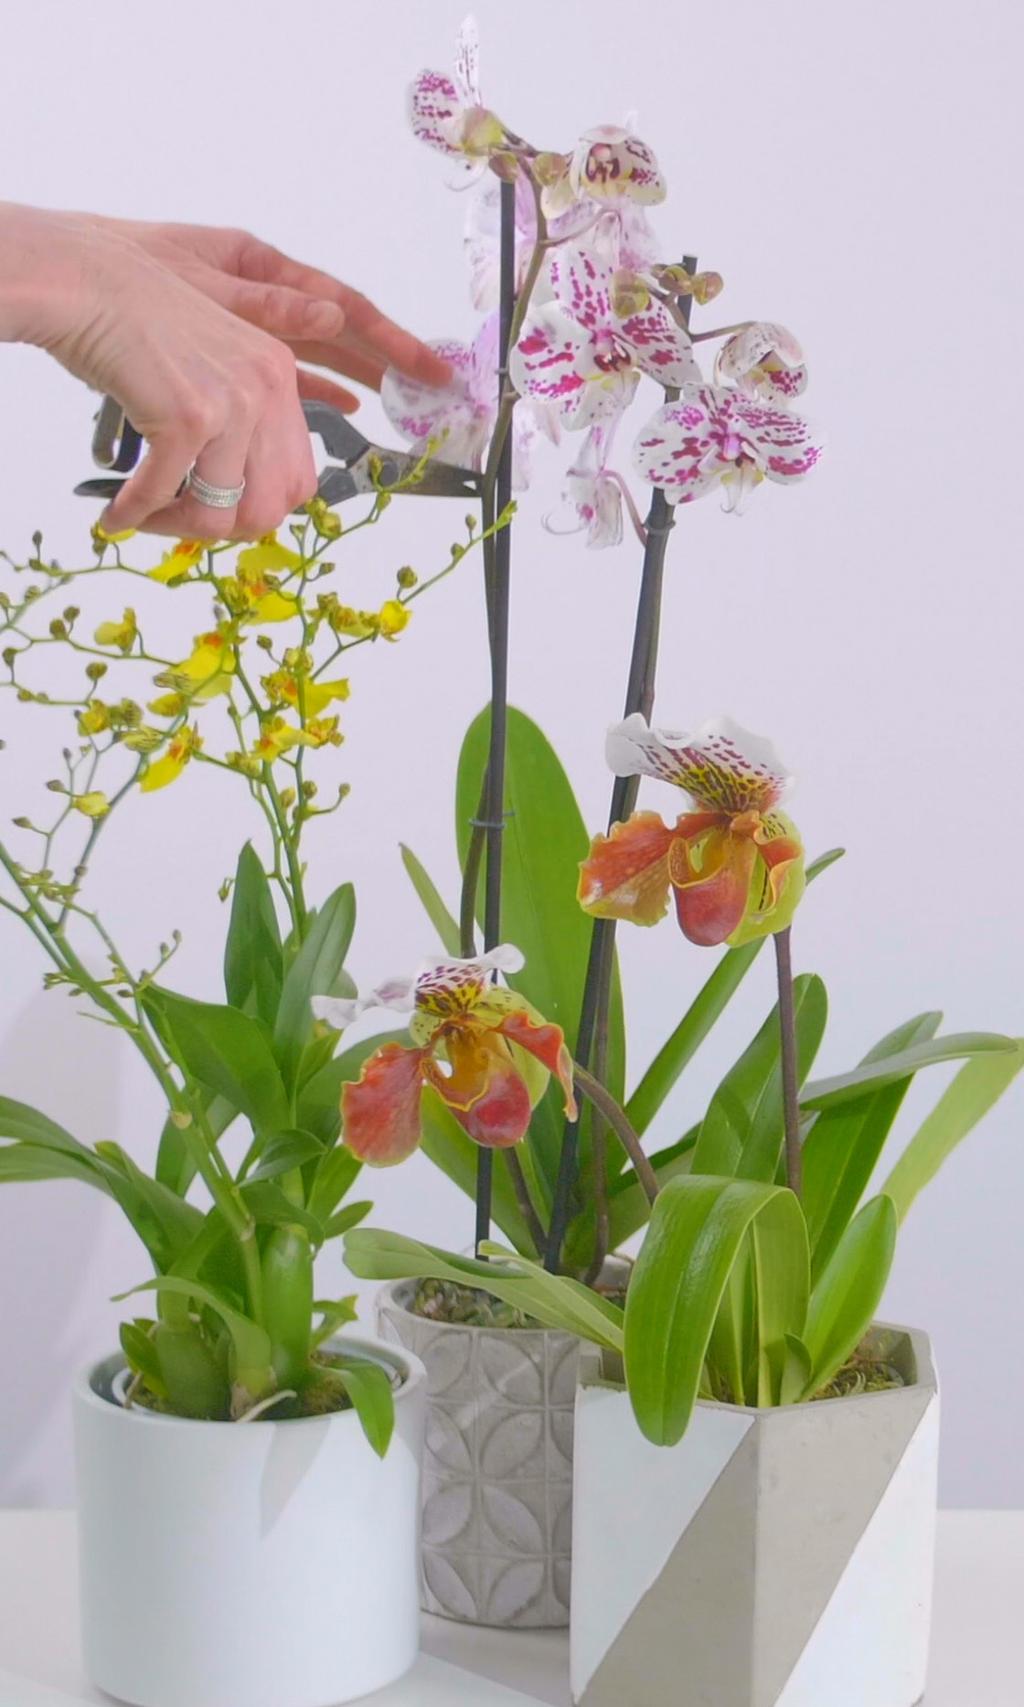 KNIP UITGEBLOEIDE BLOEMEN AF Als de bloemen van de orchidee uitgebloeid zijn, verdrogen ze en vallen ze uiteindelijk eraf.